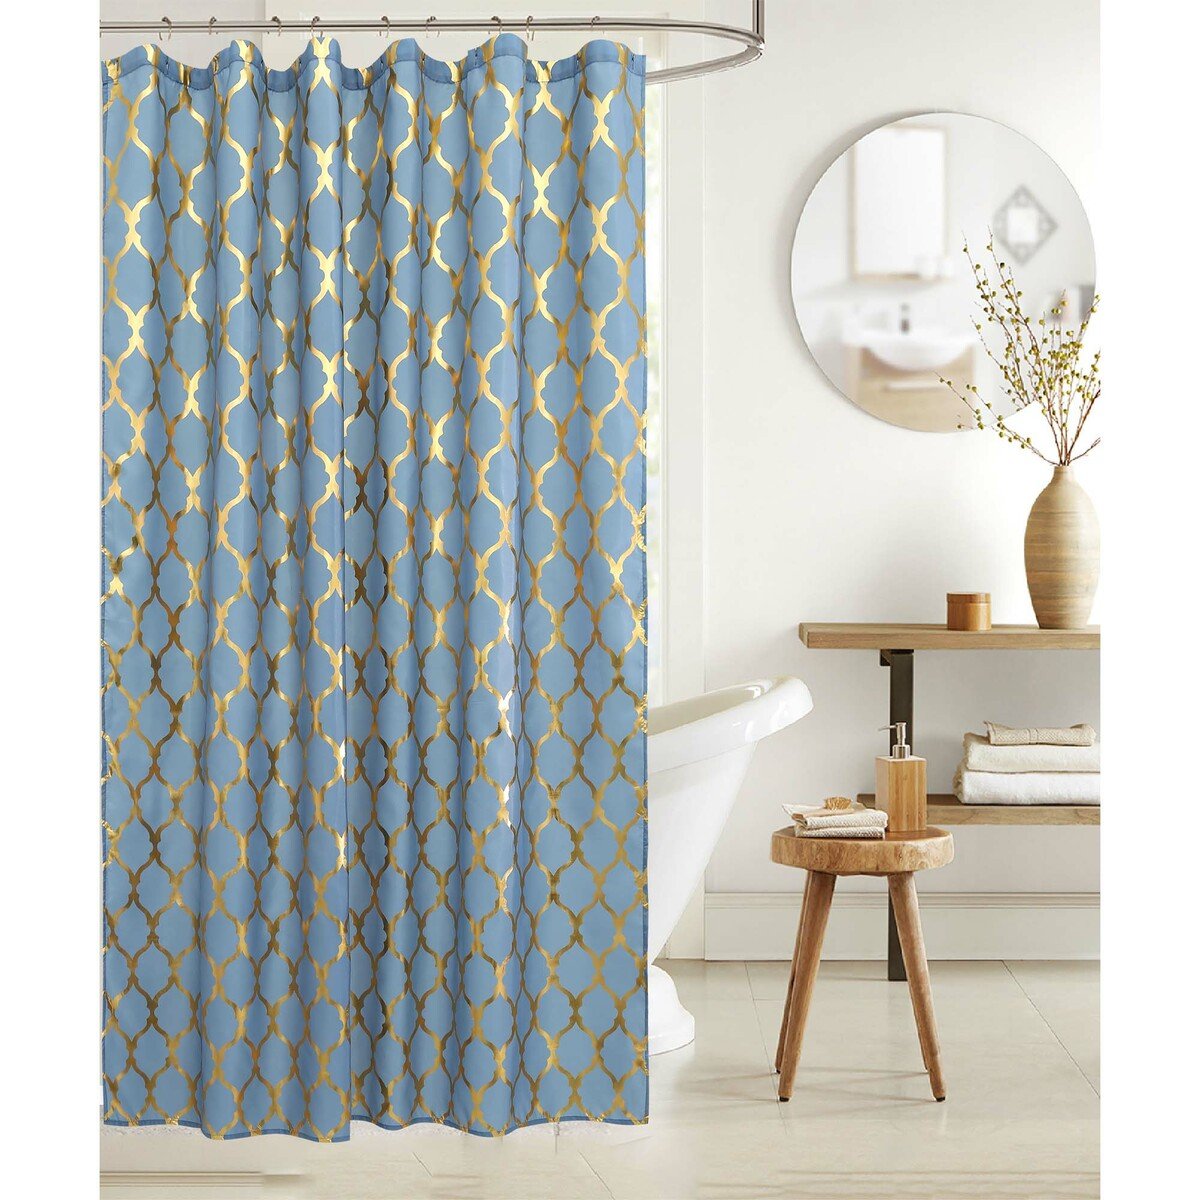 Maple Leaf Shower Curtain 180x240cm Gold foil